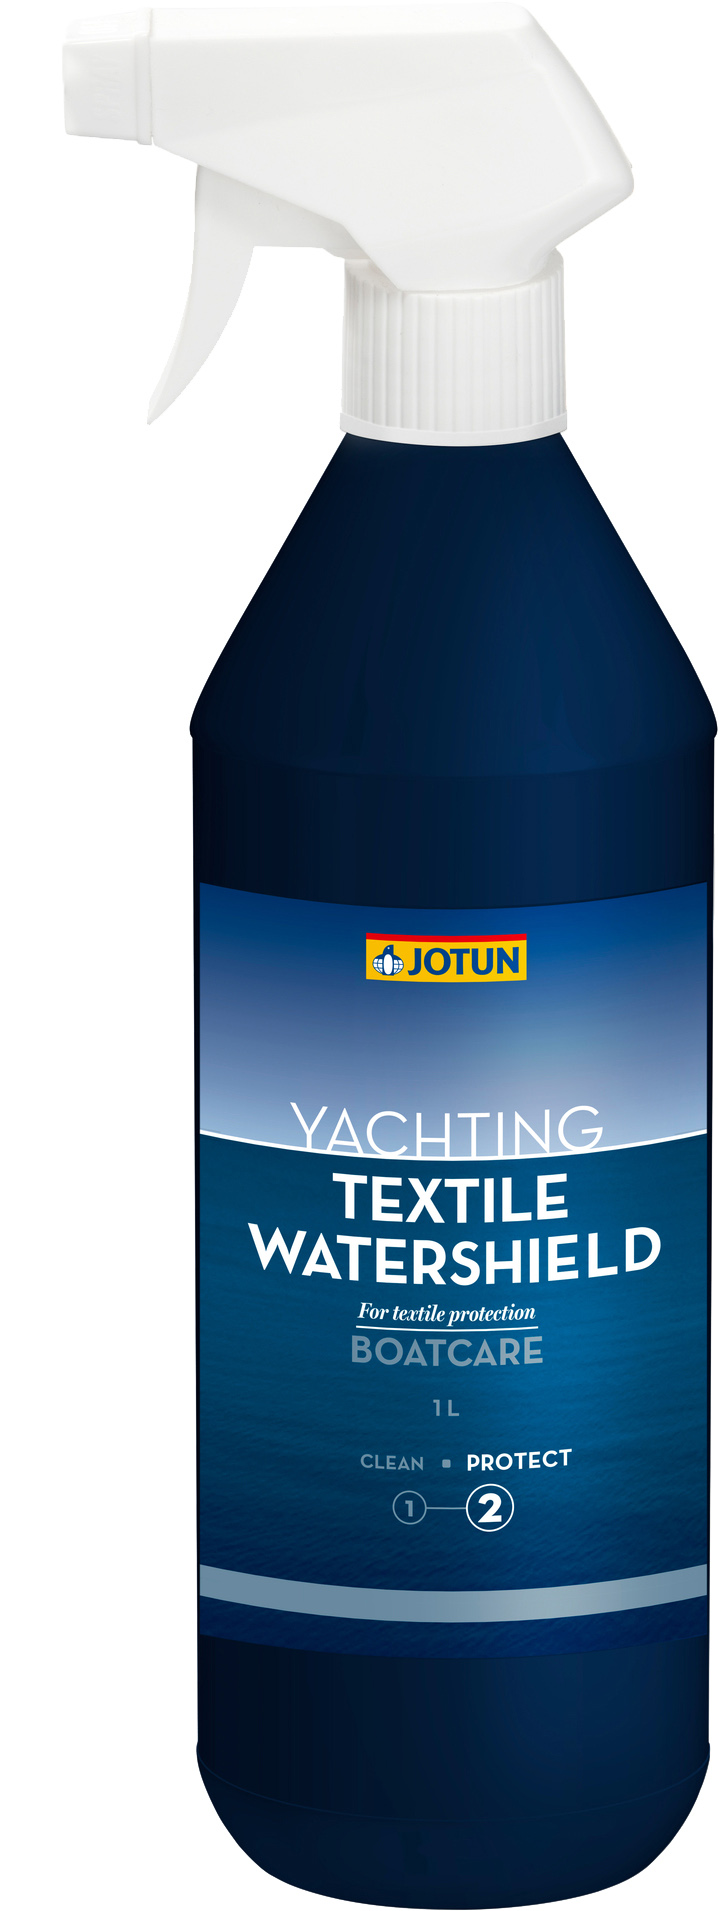 Textile Watershield 1 l - Jotun